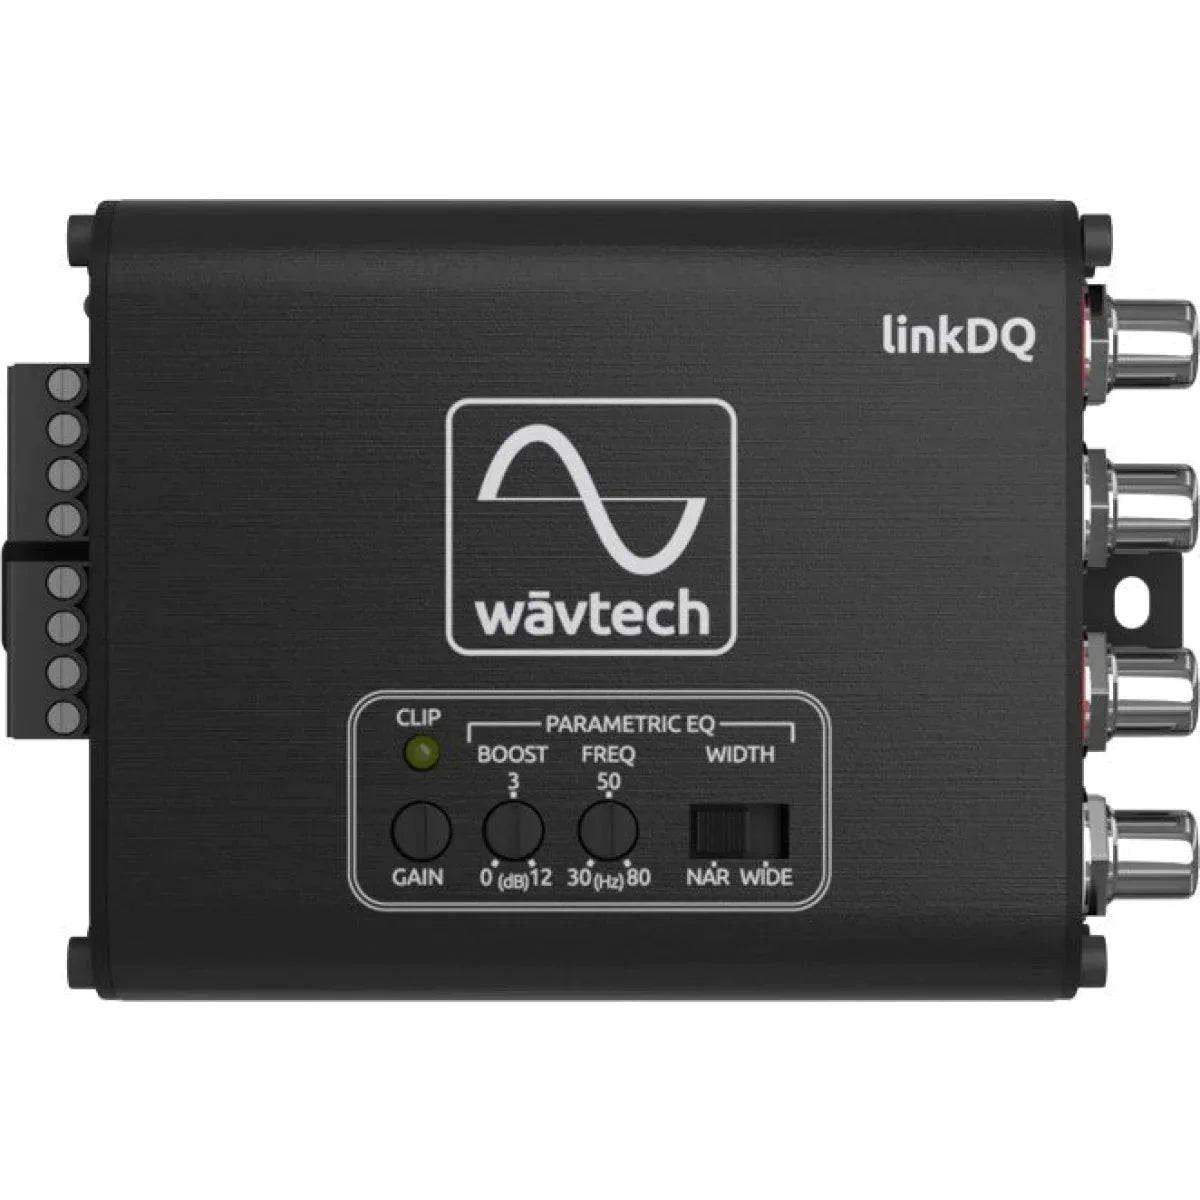 Adapter linkDQHigh-Low High-Low Adapter Wavtech WAVTECH